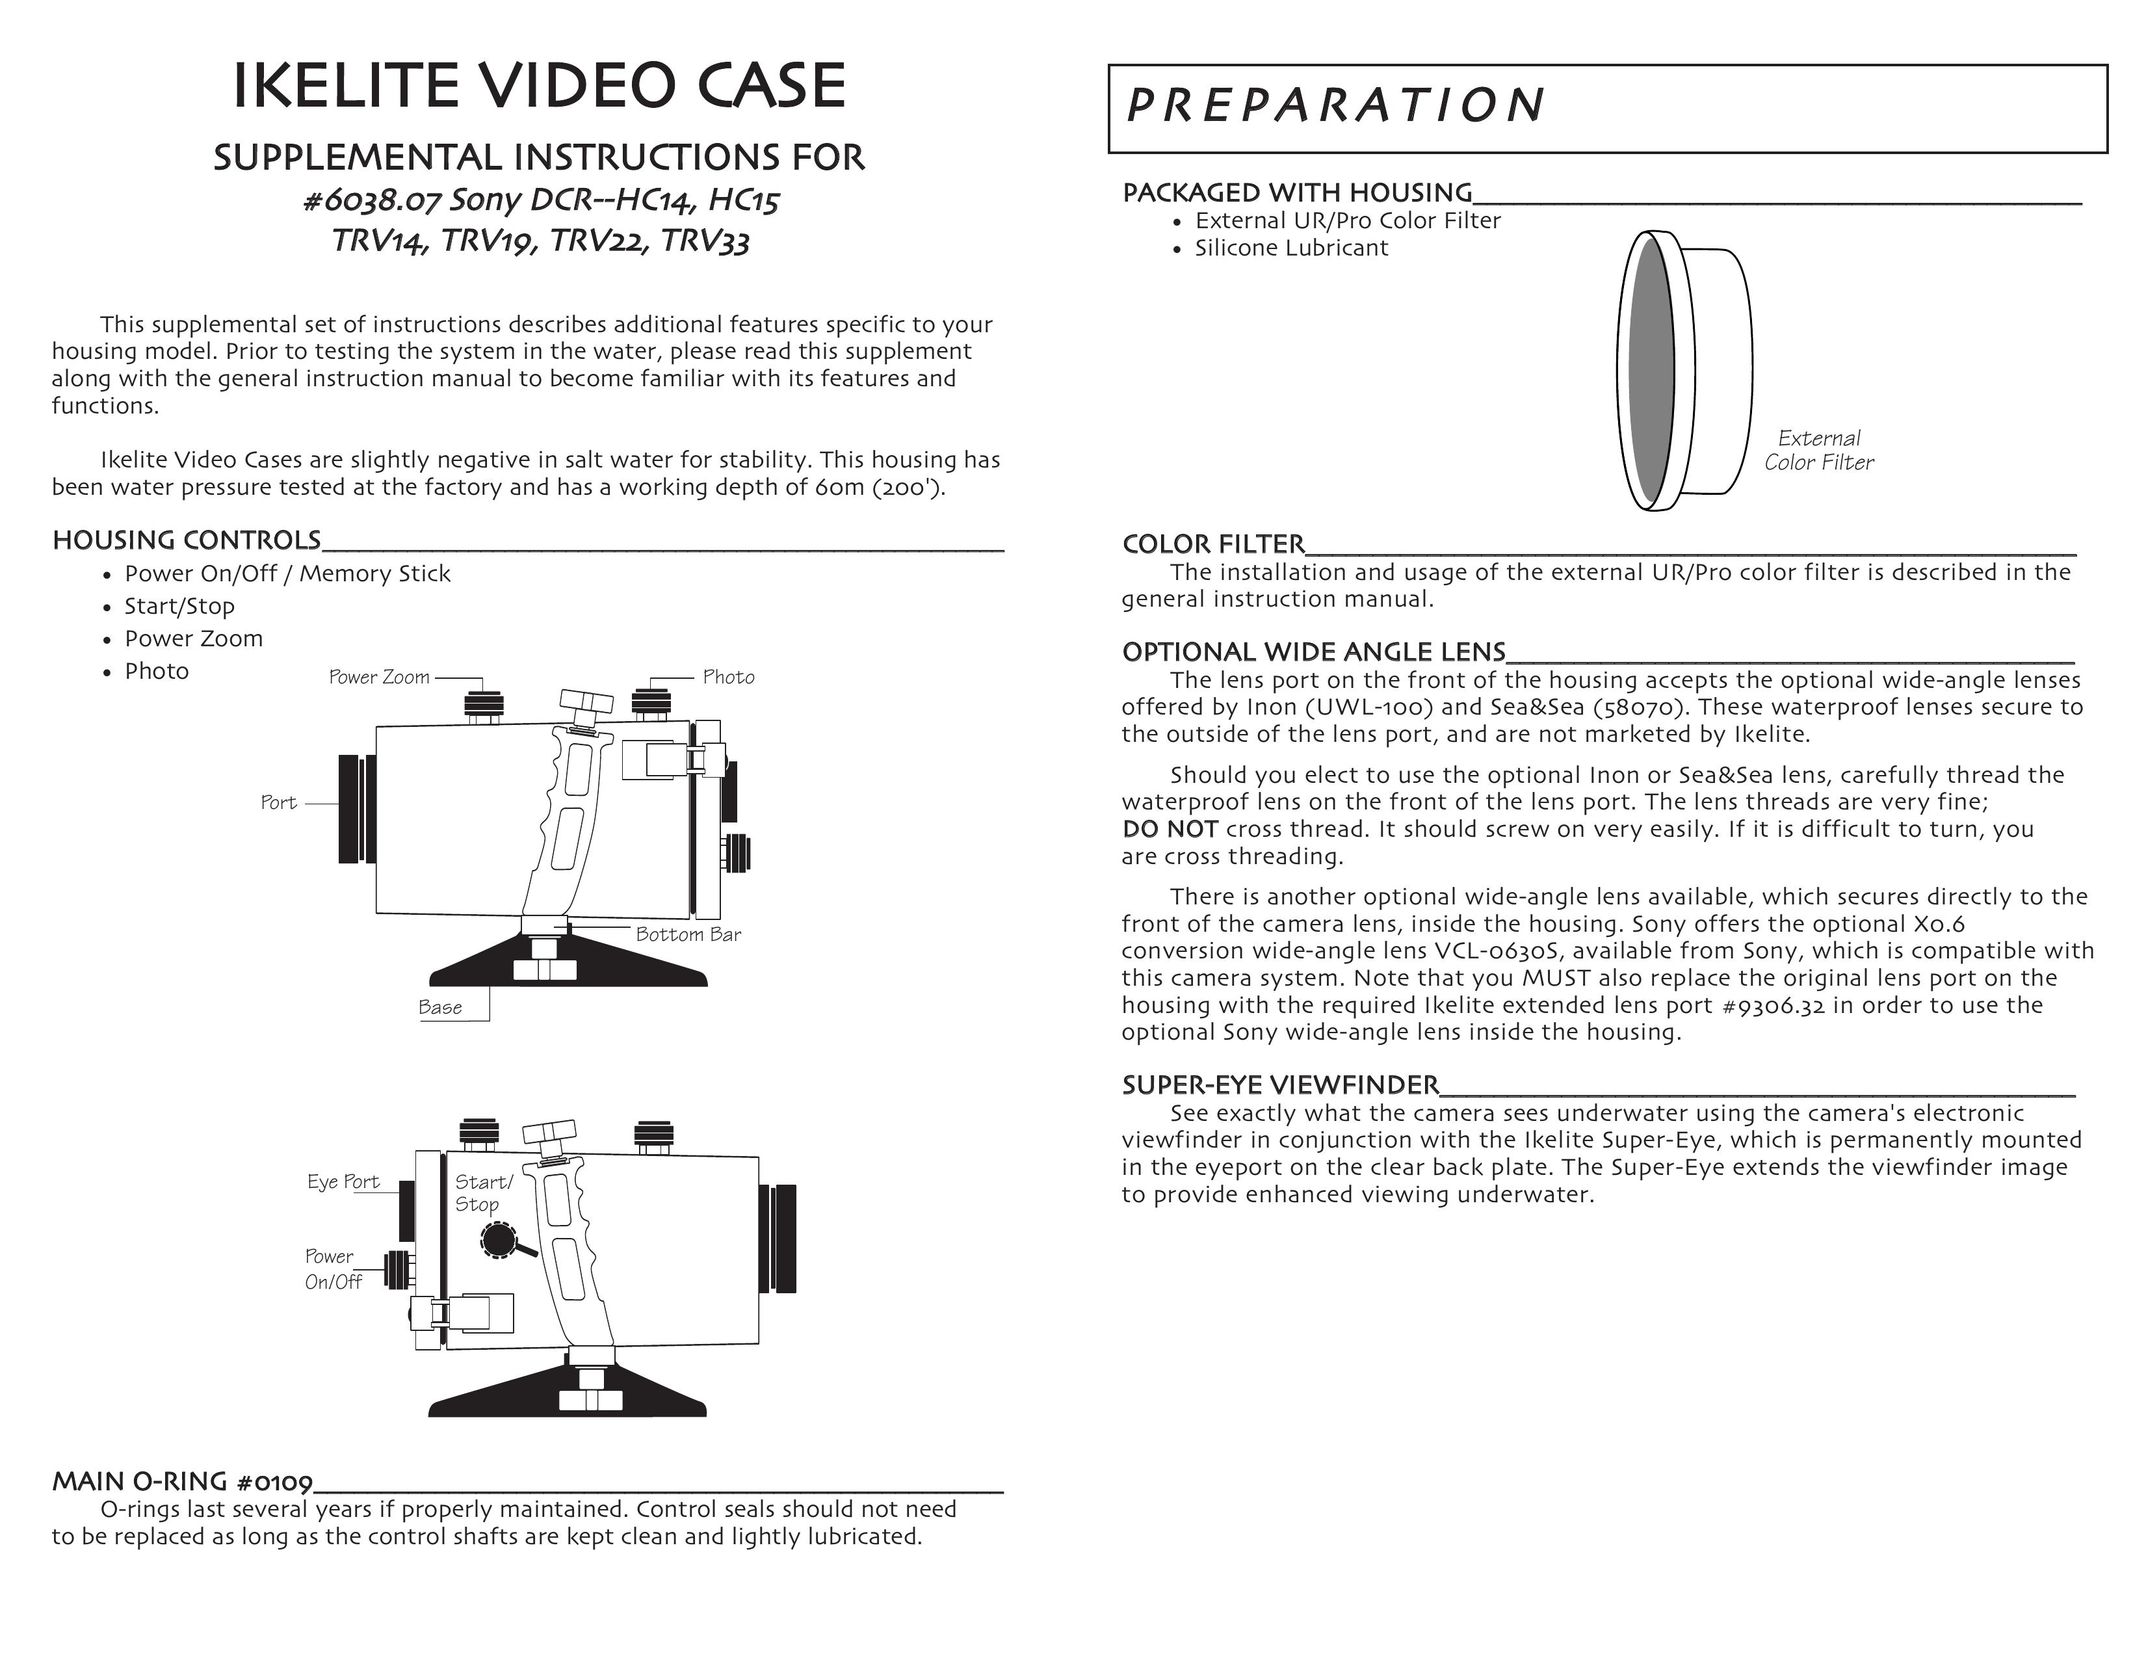 Ikelite DCR-HC14 Carrying Case User Manual